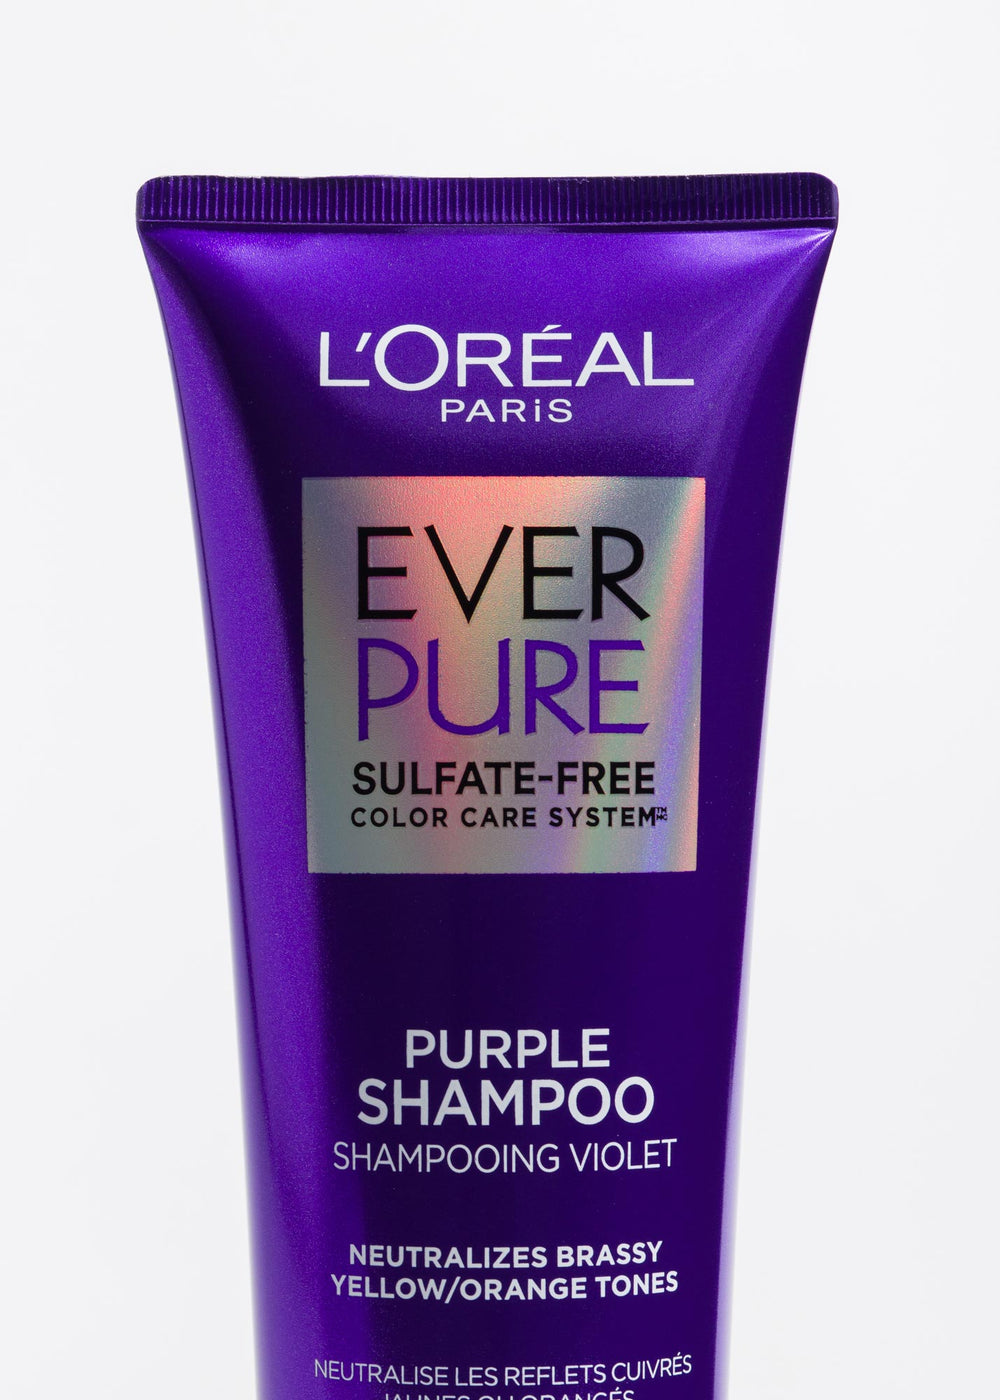 precio shampoo loreal  ever matizador romanamx